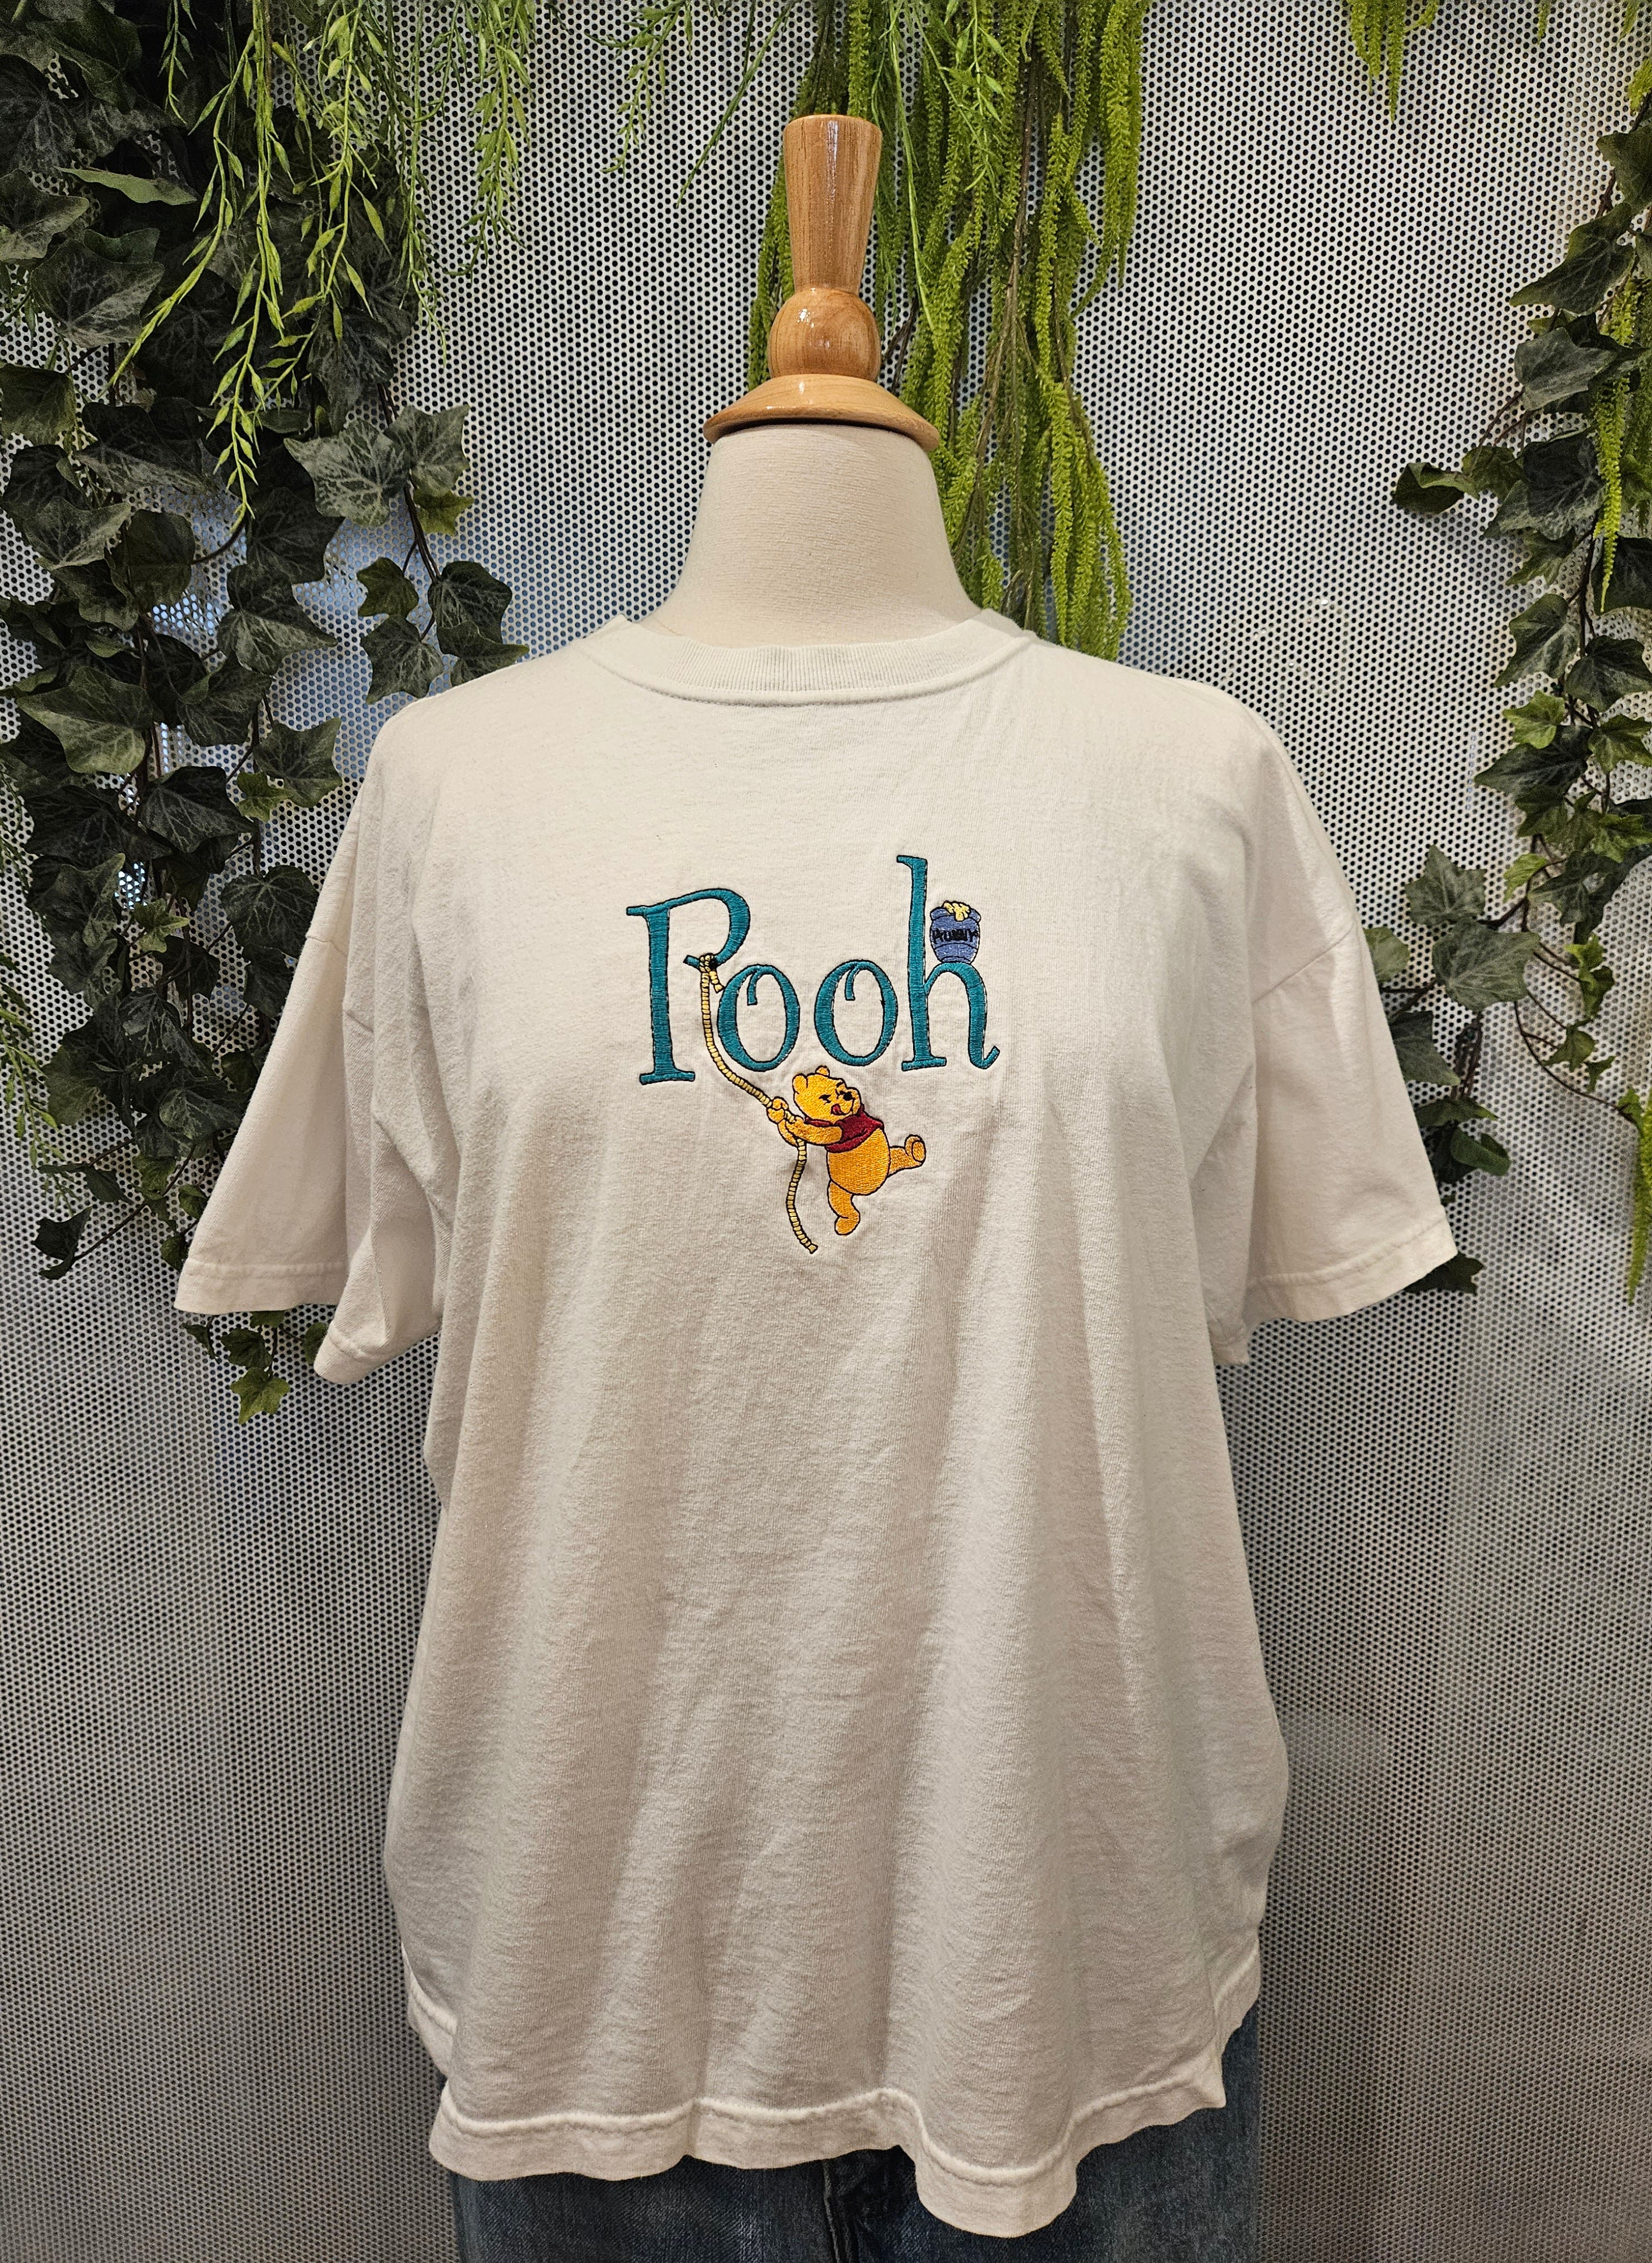 1990’s Winnie the Pooh T Shirt